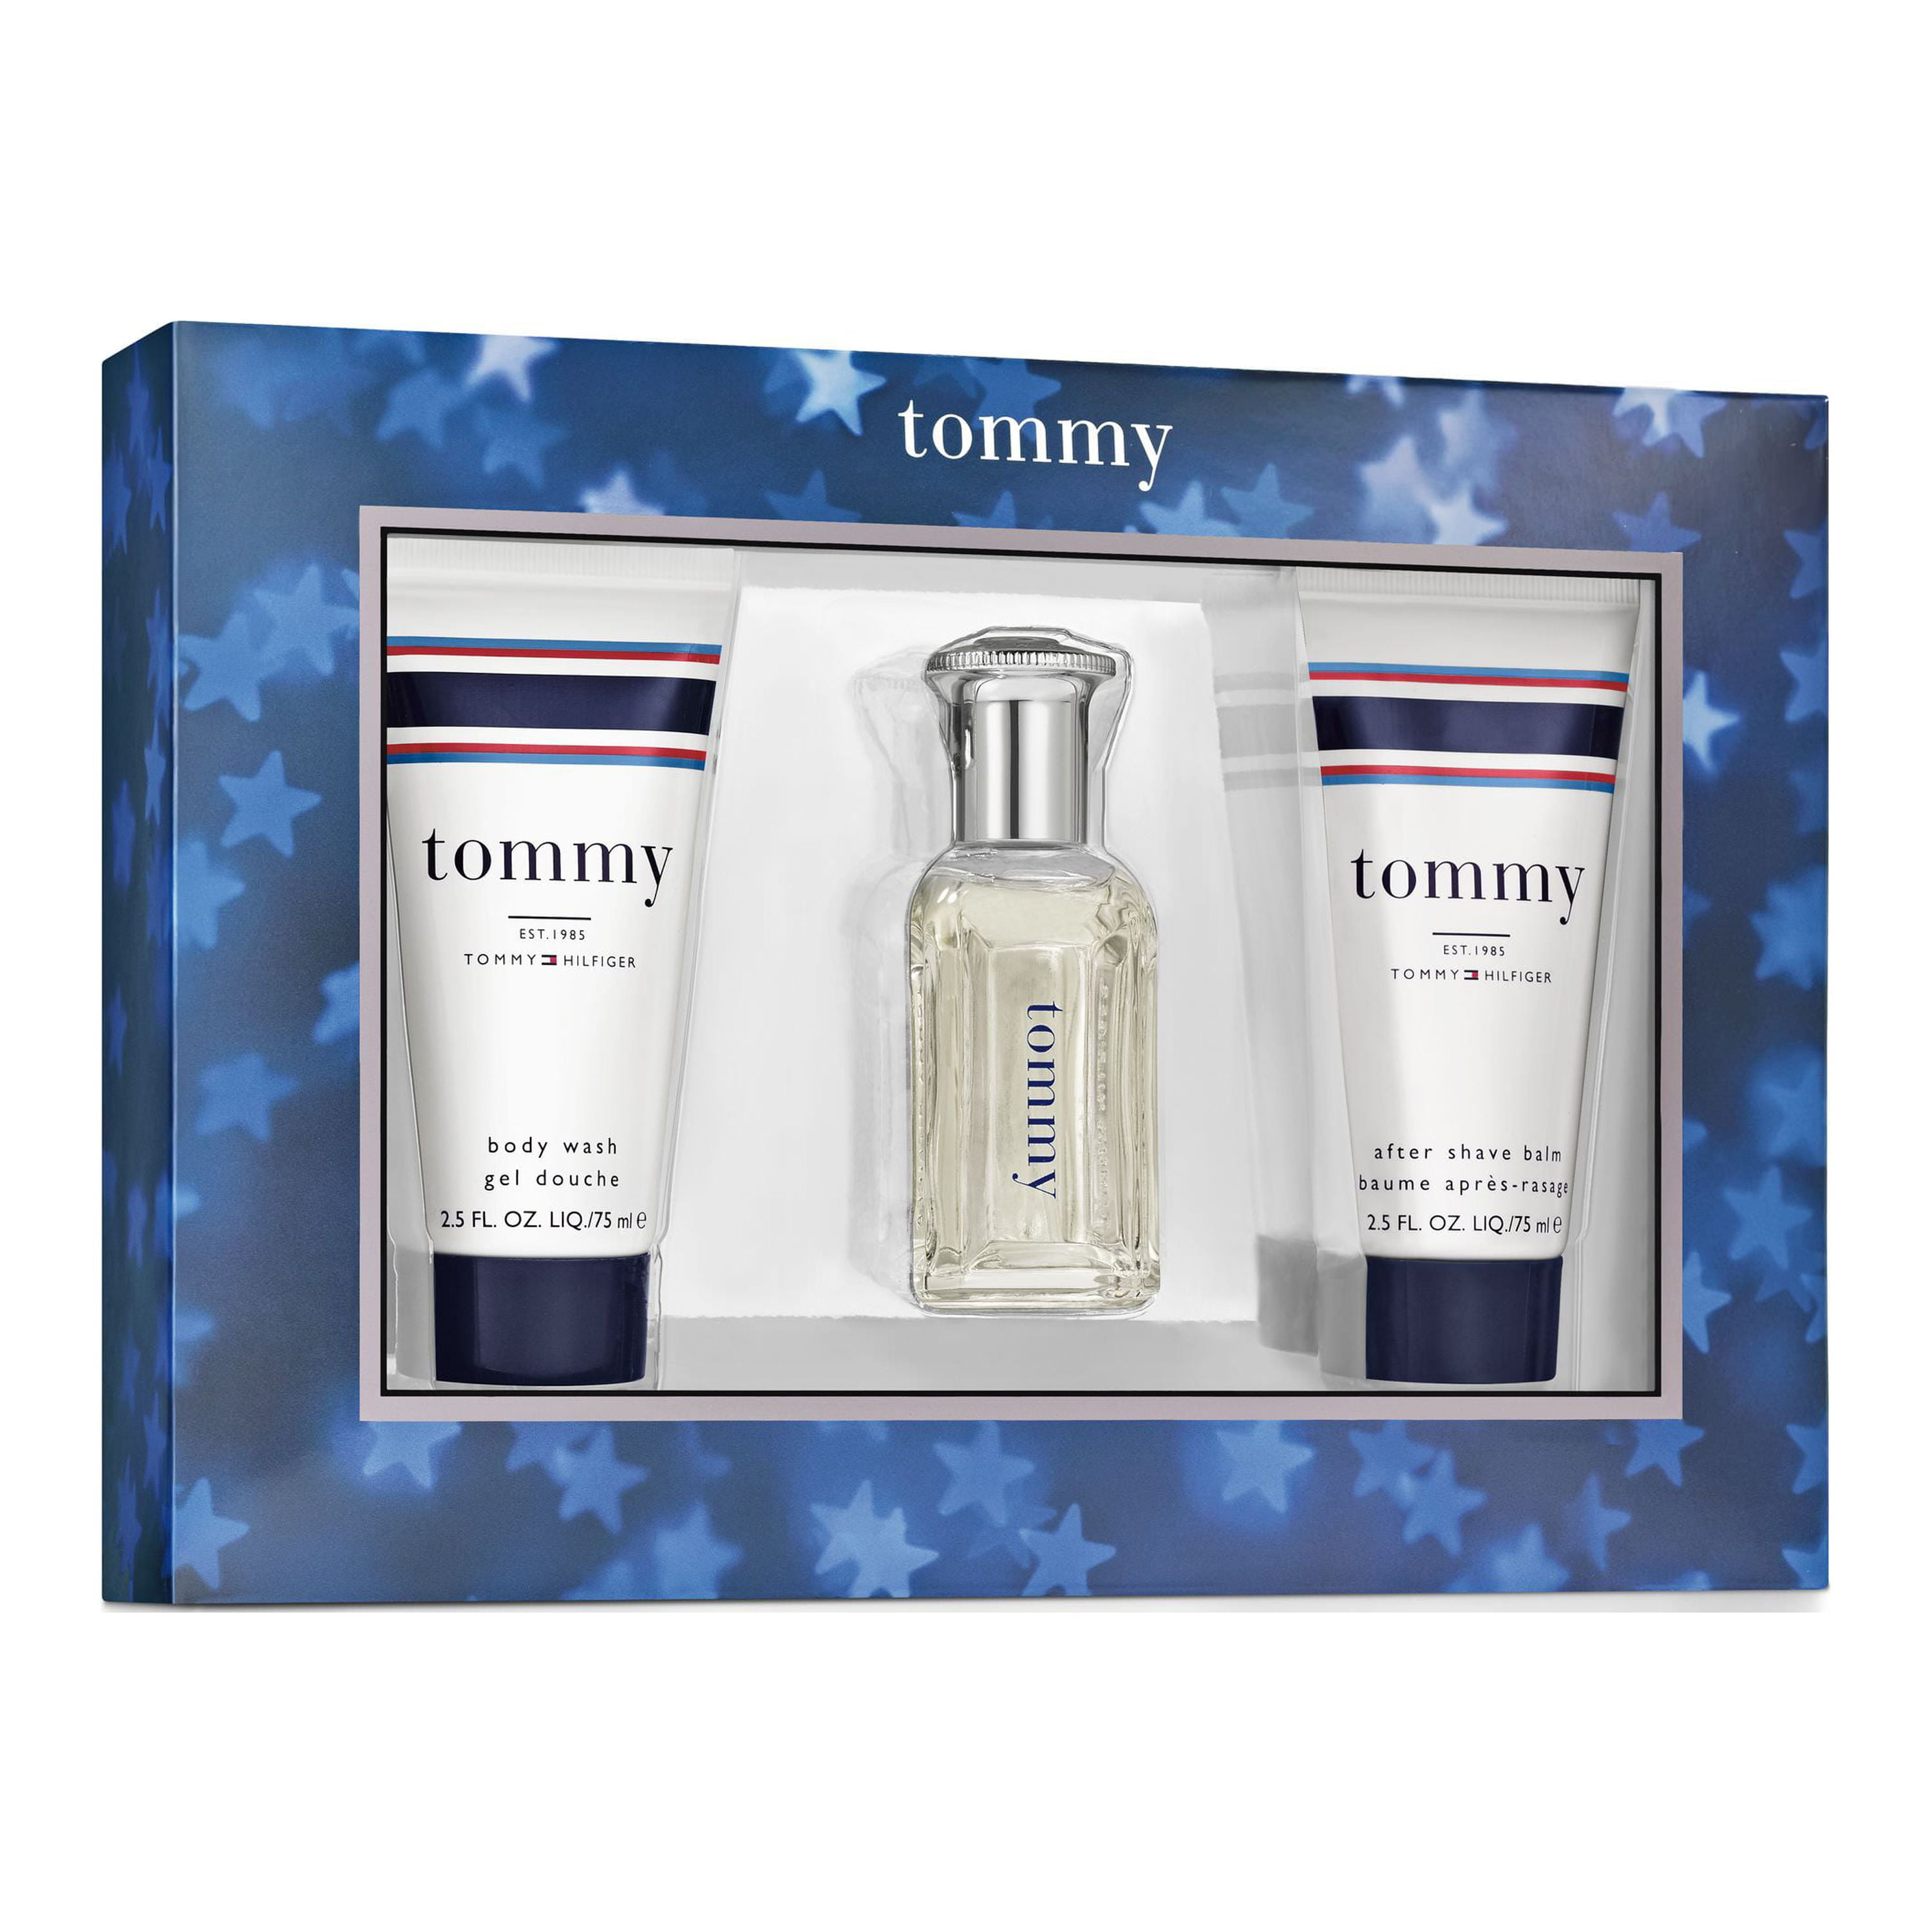 mikro efter skole Let at forstå 63 Value) Tommy Hilfiger Fragrances Tommy Cologne Gift Set for Men, 3  pieces - Walmart.com